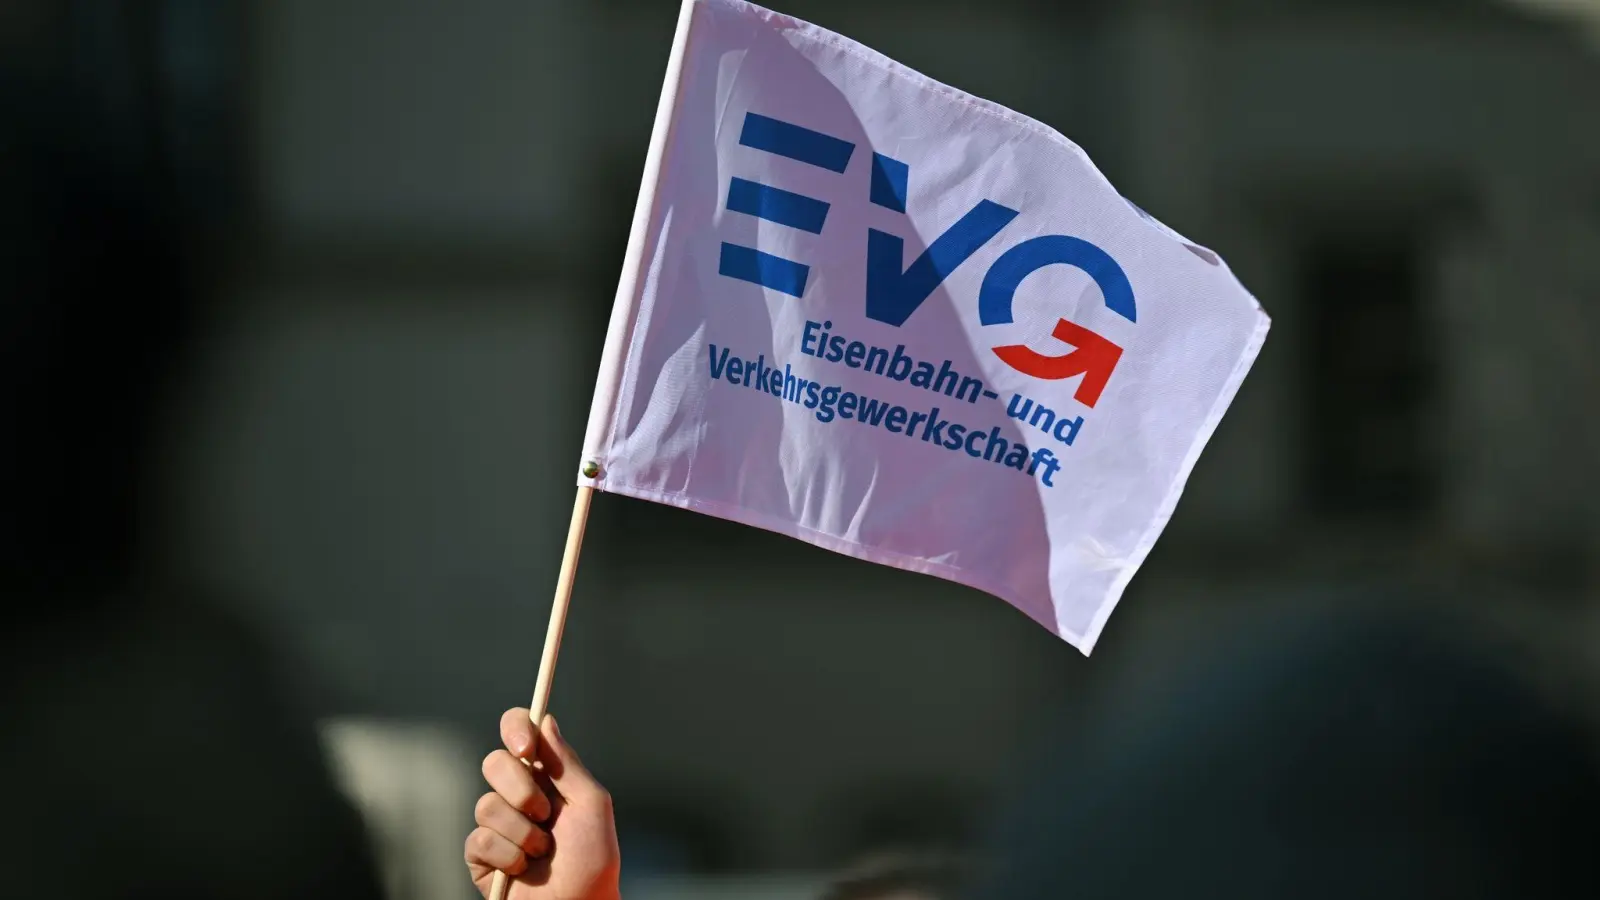 Die EVG will in ihren Verhandlungen mit der Deutschen Bahn und Dutzenden weiteren Eisenbahn-Unternehmen höhere Löhne durchsetzen. (Foto: Martin Schutt/dpa)